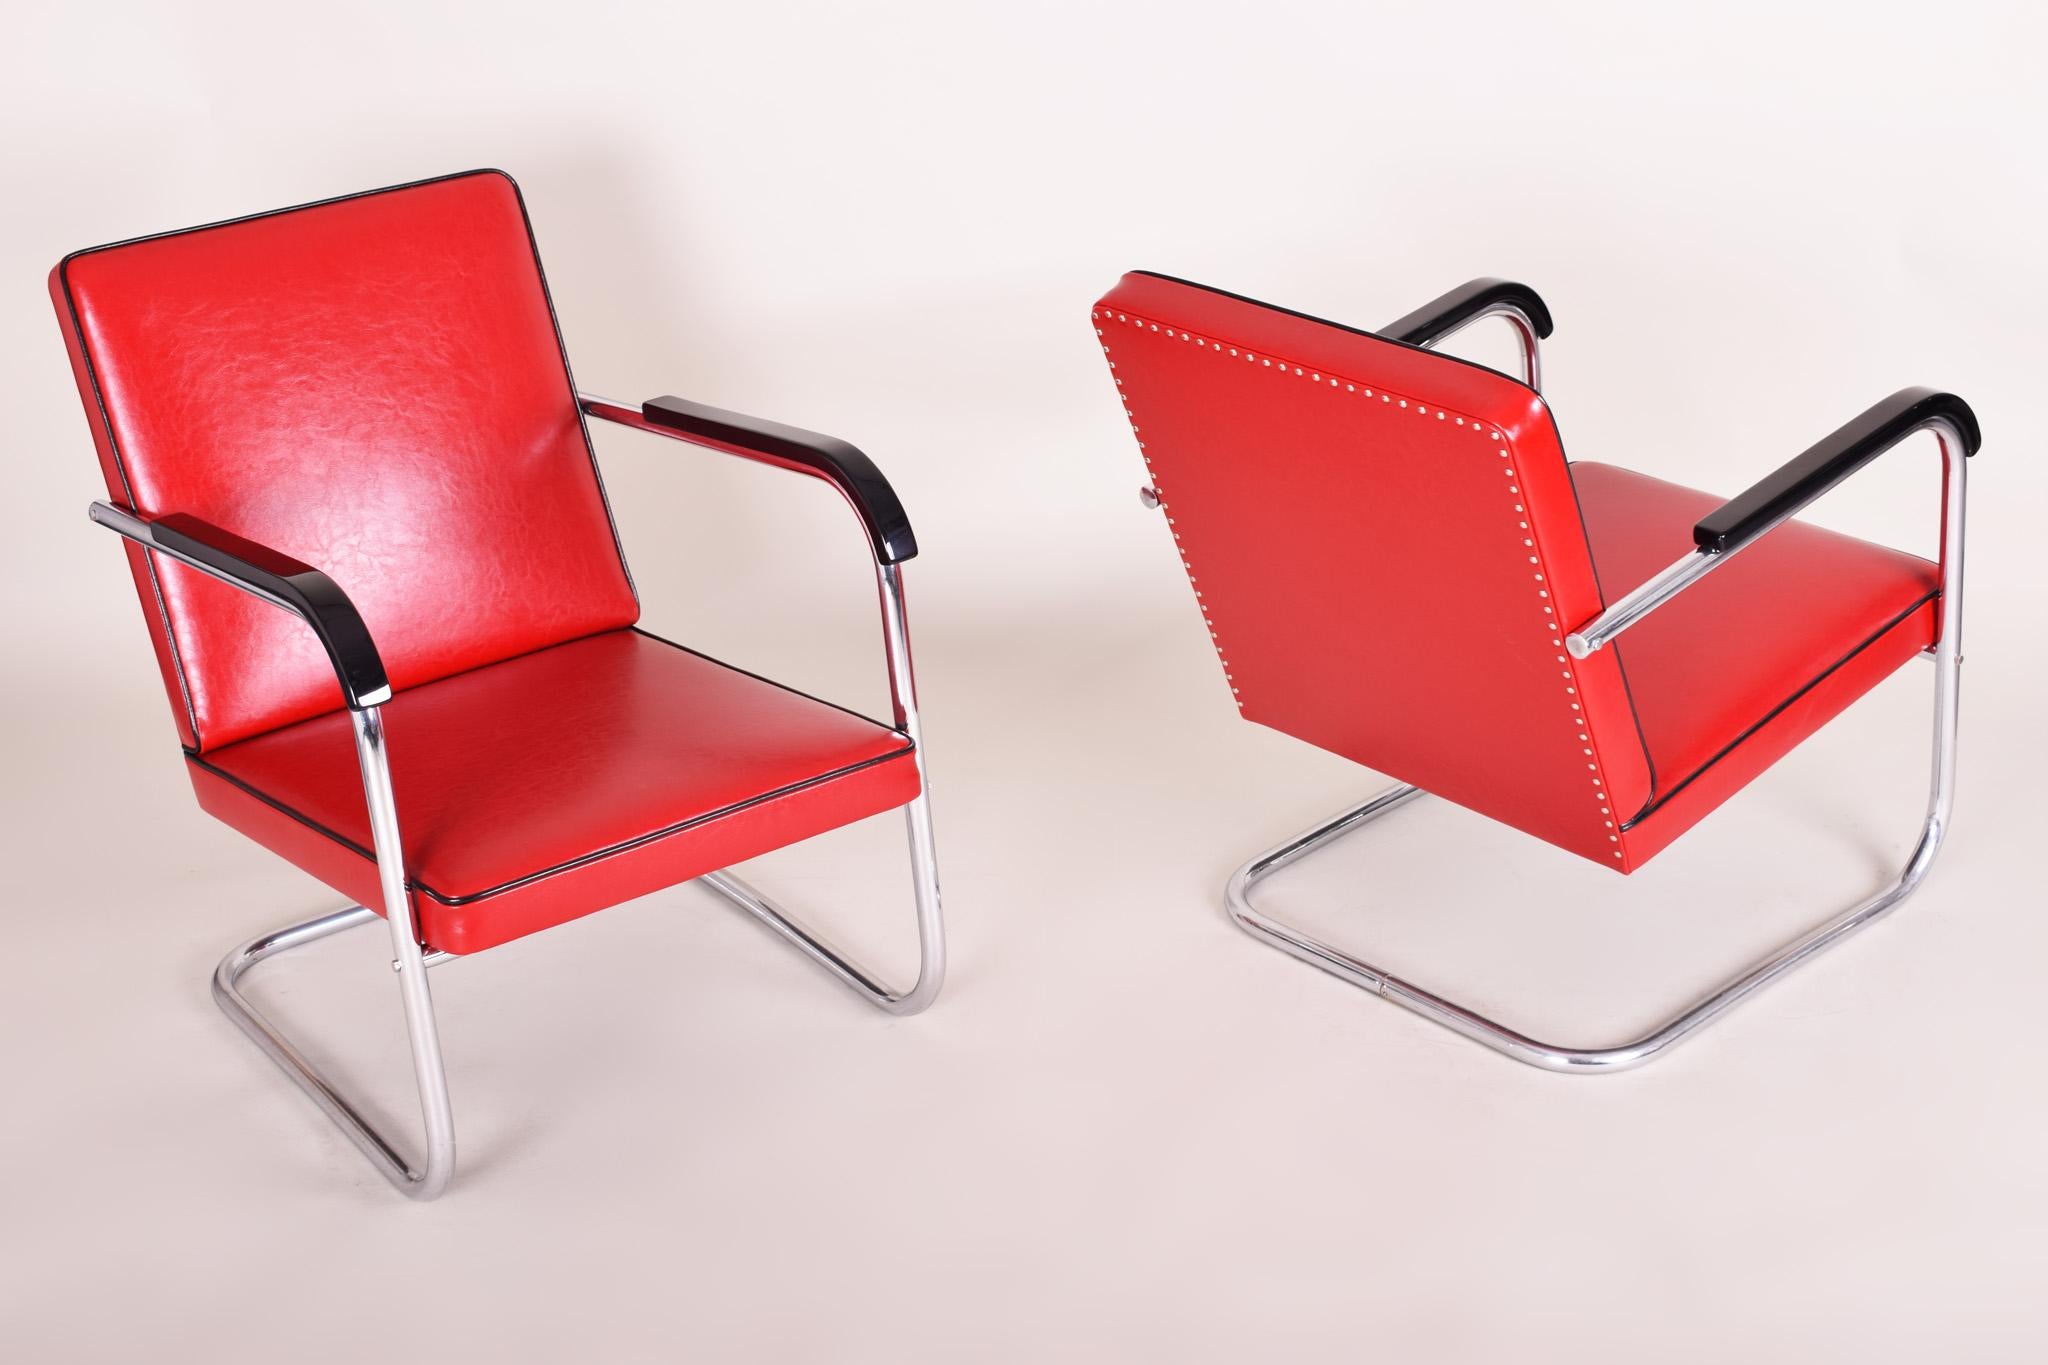 Acier Paire de fauteuils Bauhaus rouges fabriqués en Allemagne dans les années 30, conçus par Anton Lorenz en vente